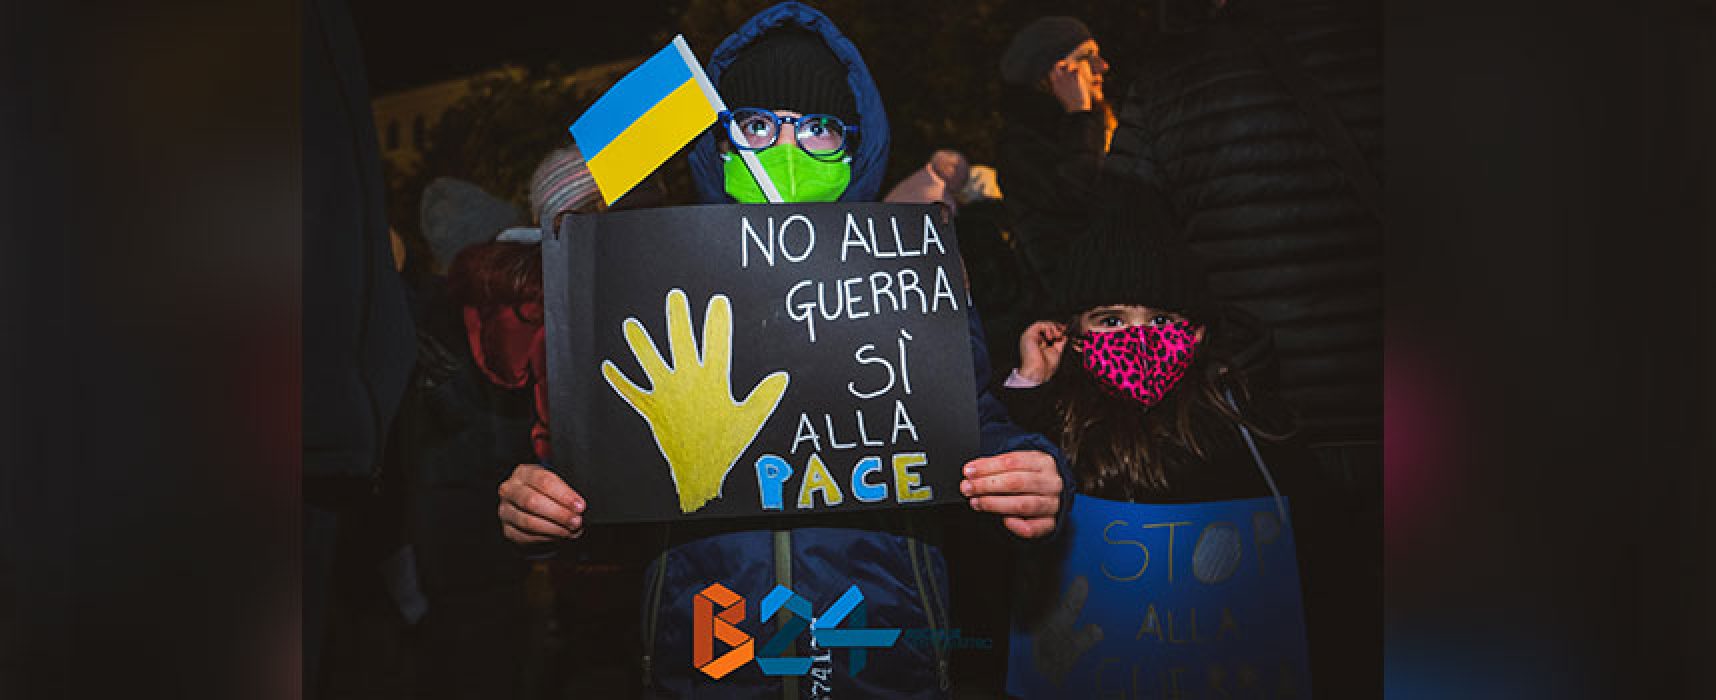 Bisceglie in piazza per solidarietà con popolo ucraino: “Guerra resti nei libri di storia” / FOTO